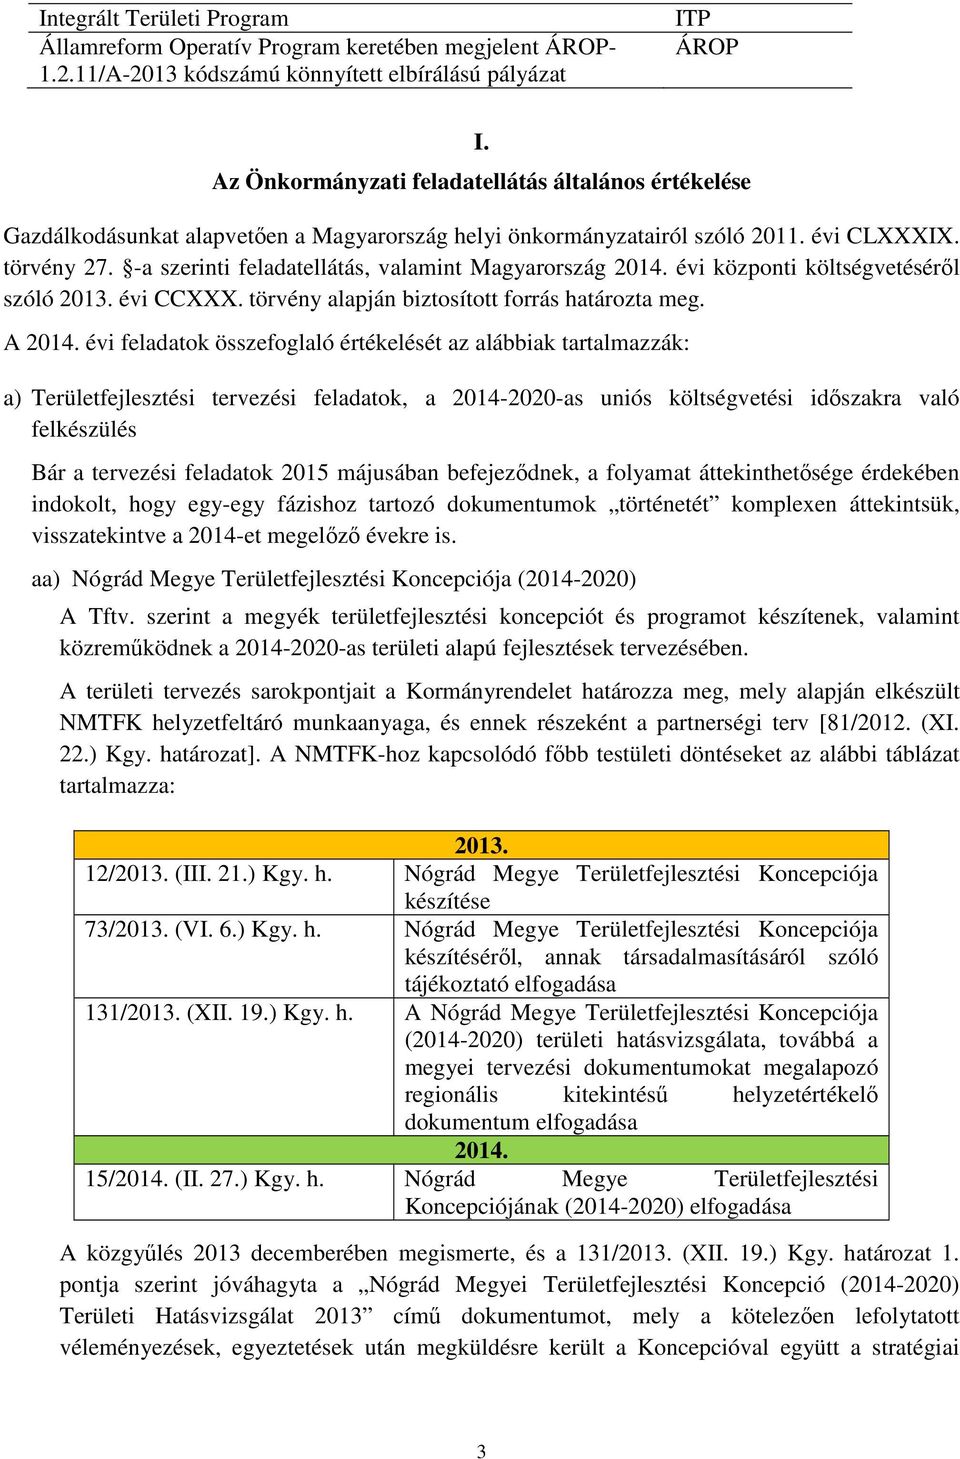 -a szerinti feladatellátás, valamint Magyarország 2014. évi központi költségvetéséről szóló 2013. évi CCXXX. törvény alapján biztosított forrás határozta meg. A 2014.